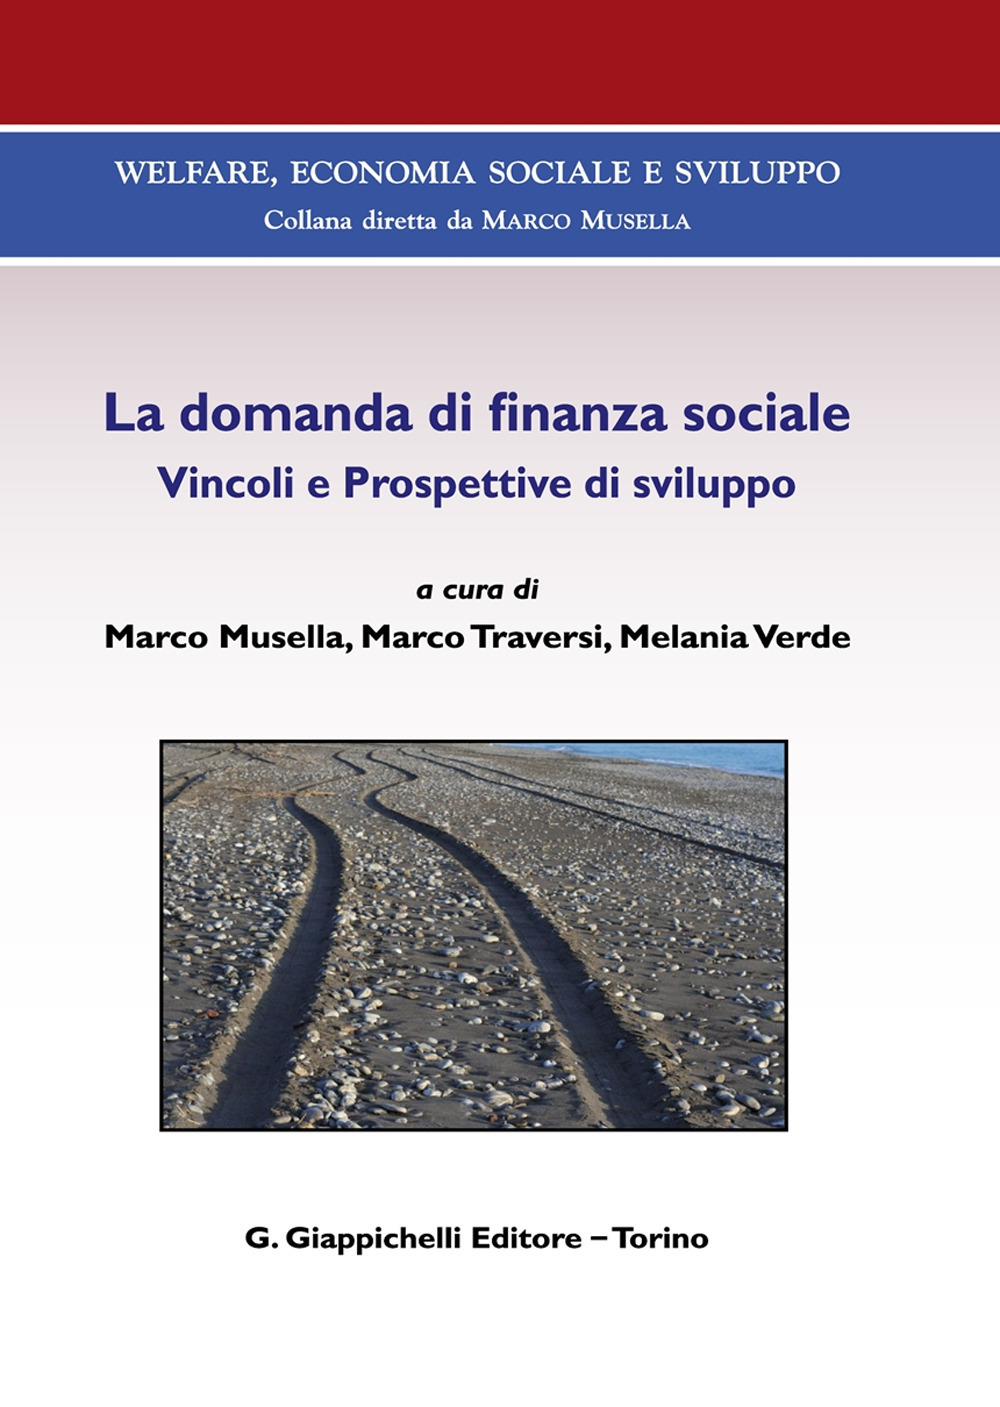 La domanda di finanza sociale. Vincoli e prospettive di sviluppo